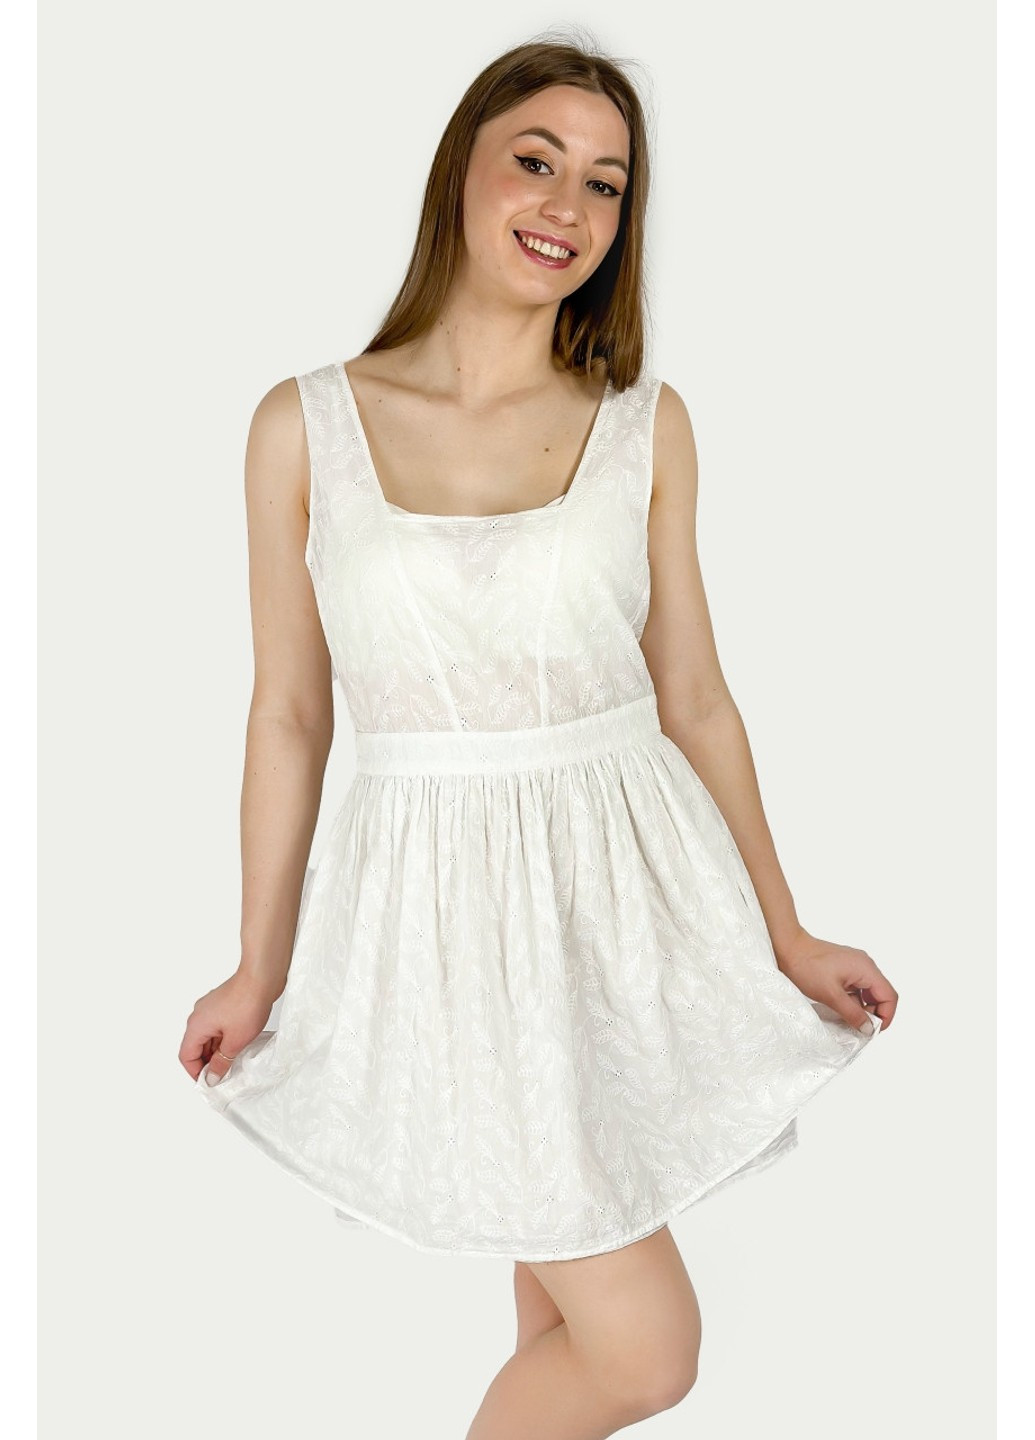 Белое коктейльное платье 7521/019/251 с открытой спиной Zara с цветочным принтом